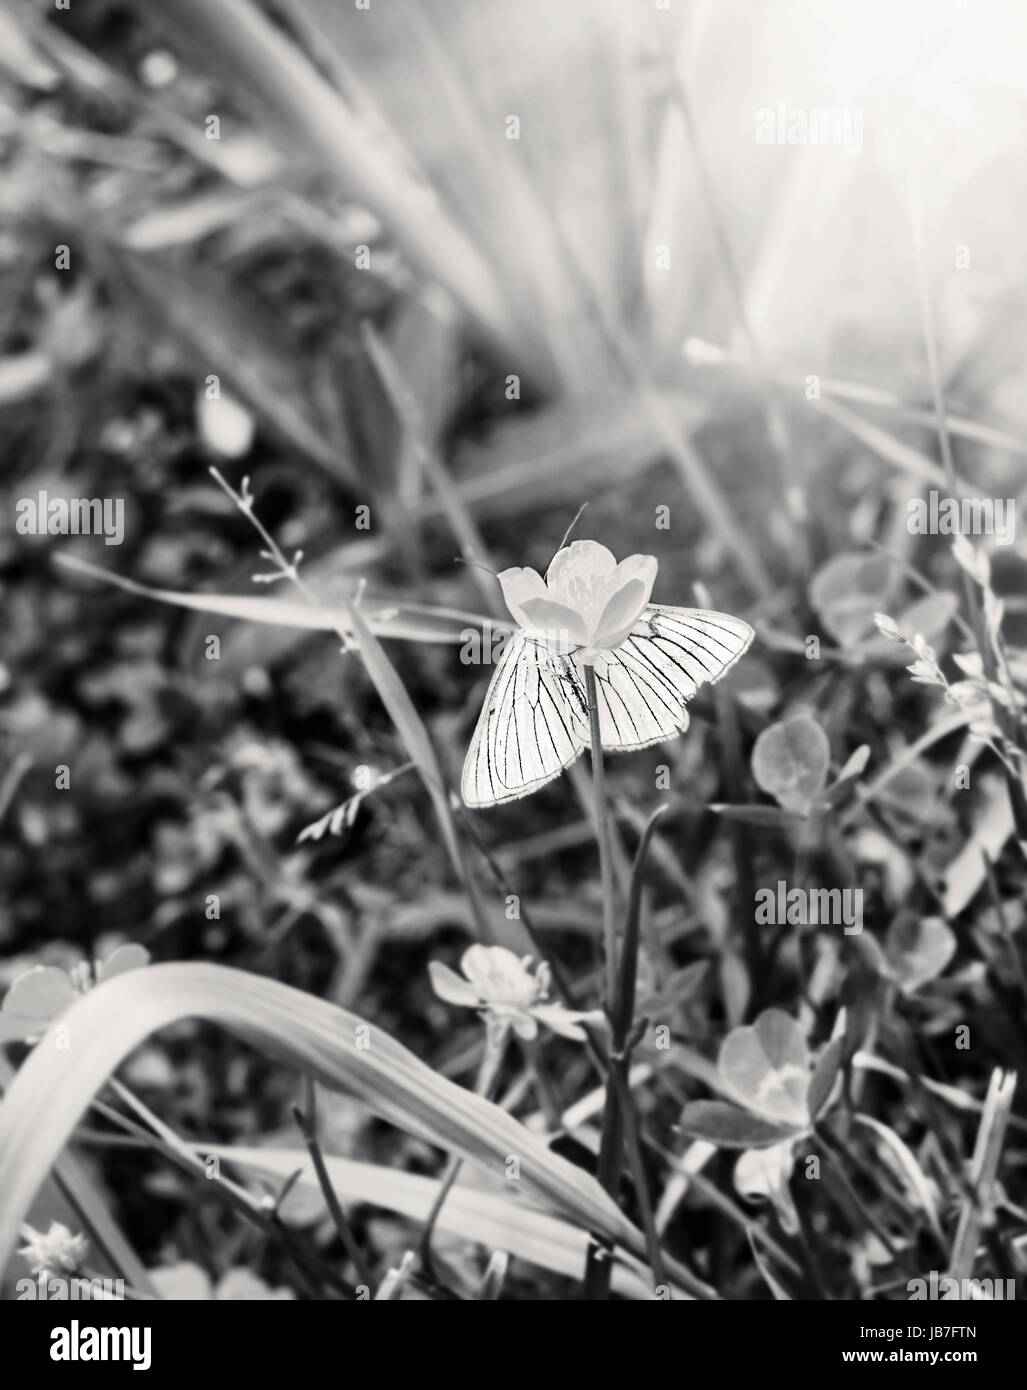 Gara a farfalla bianca nasconde su fiore in bianco e nero Foto Stock